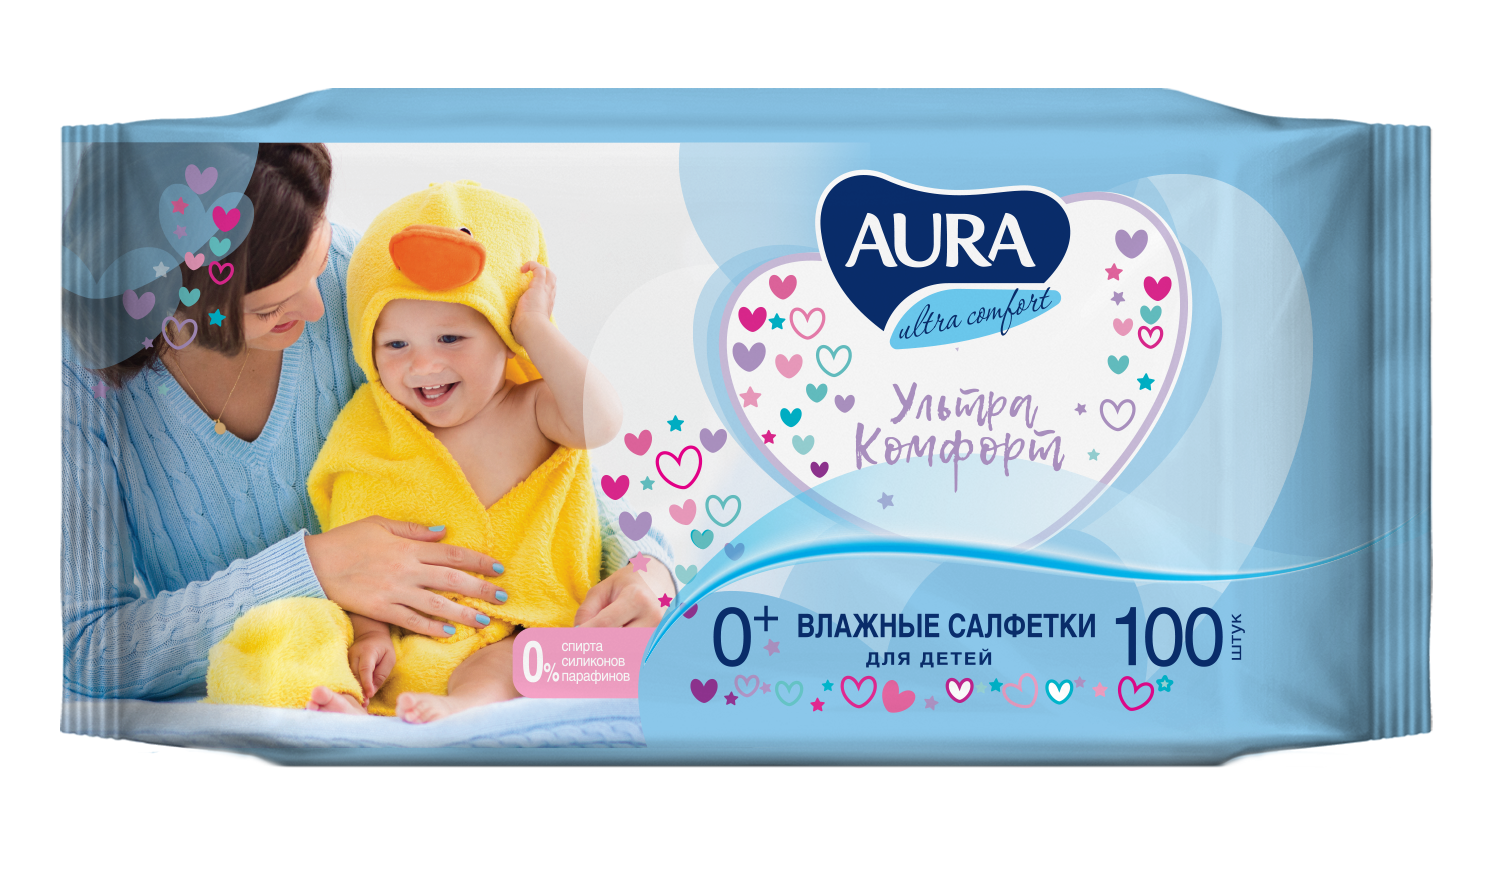 Влажные салфетки детские Aura ULTRA COMFORT 0+ big-pack с крышкой 100х6 шт салфетки влажные солнце и луна ultra comfort детские 63 шт 2305